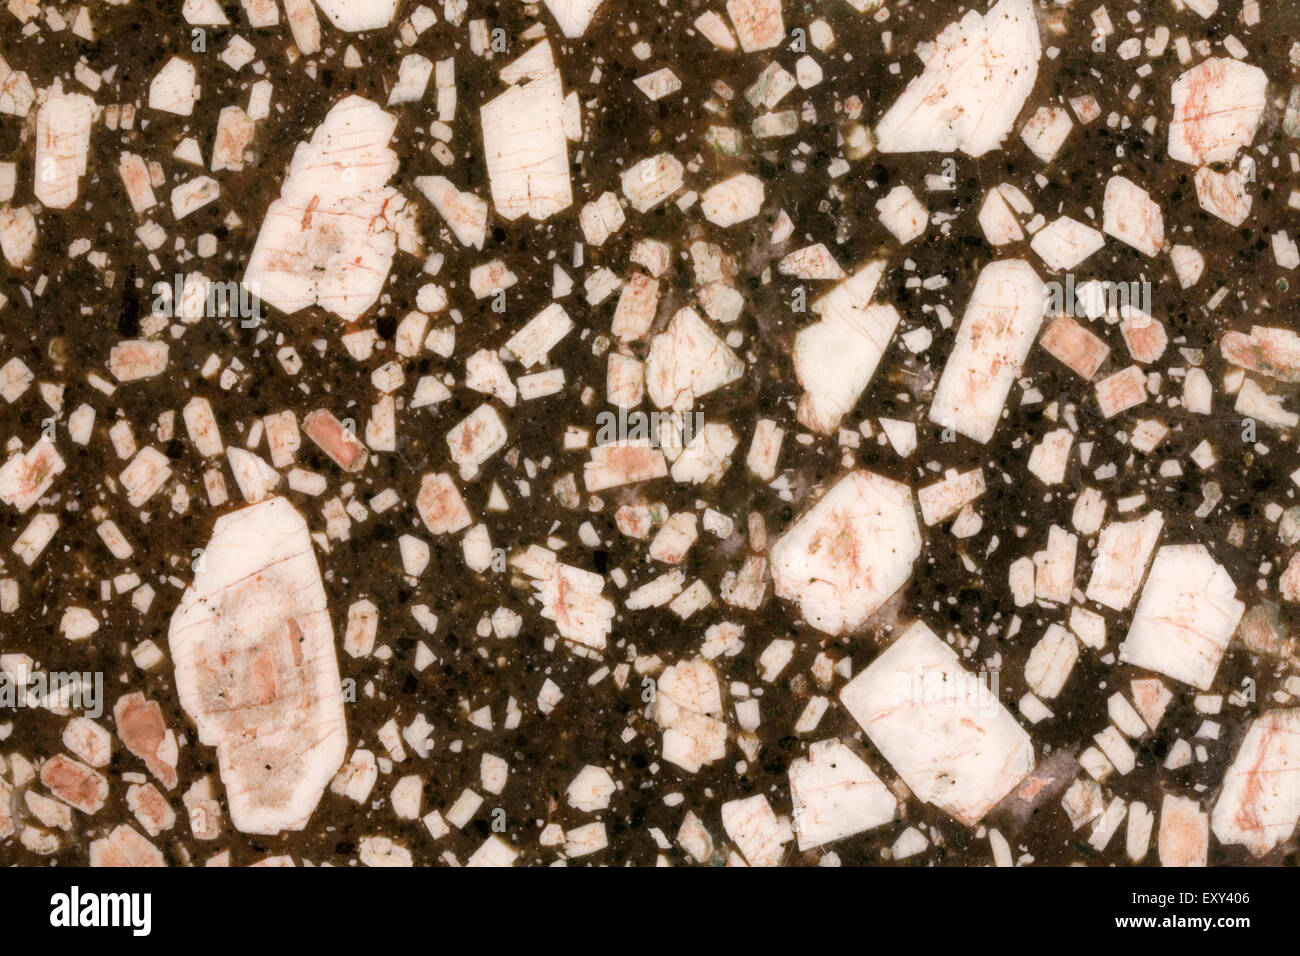 Bannockburn (porphyre porphyre matachewan), montrant phénocristaux de feldspath dans une matrice mafique de roche ignée, Canada Banque D'Images